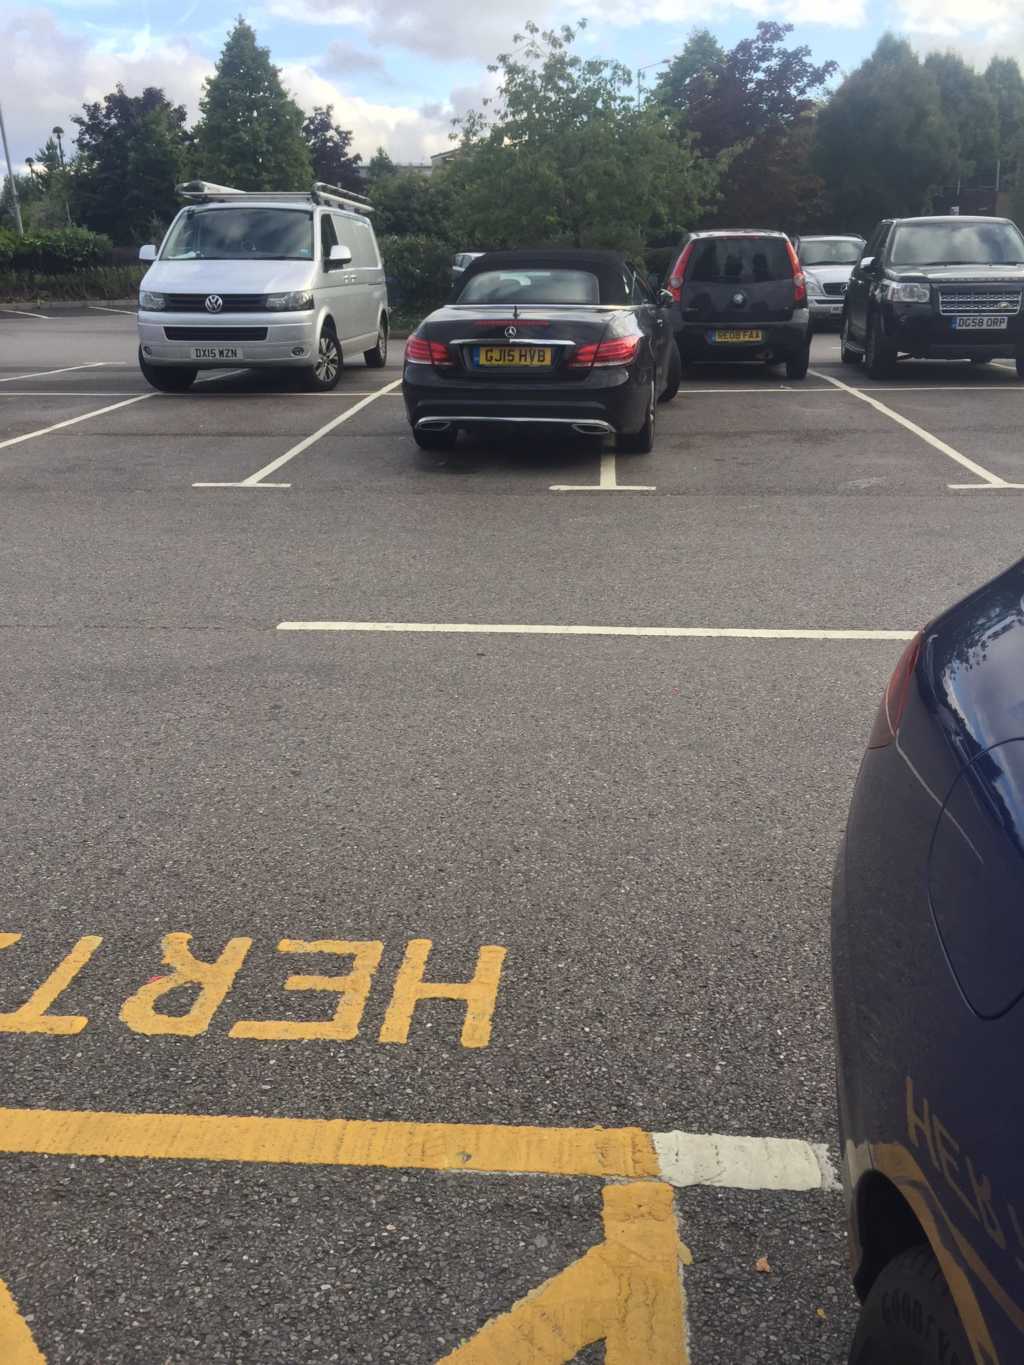 GJ15 HVB displaying Selfish Parking